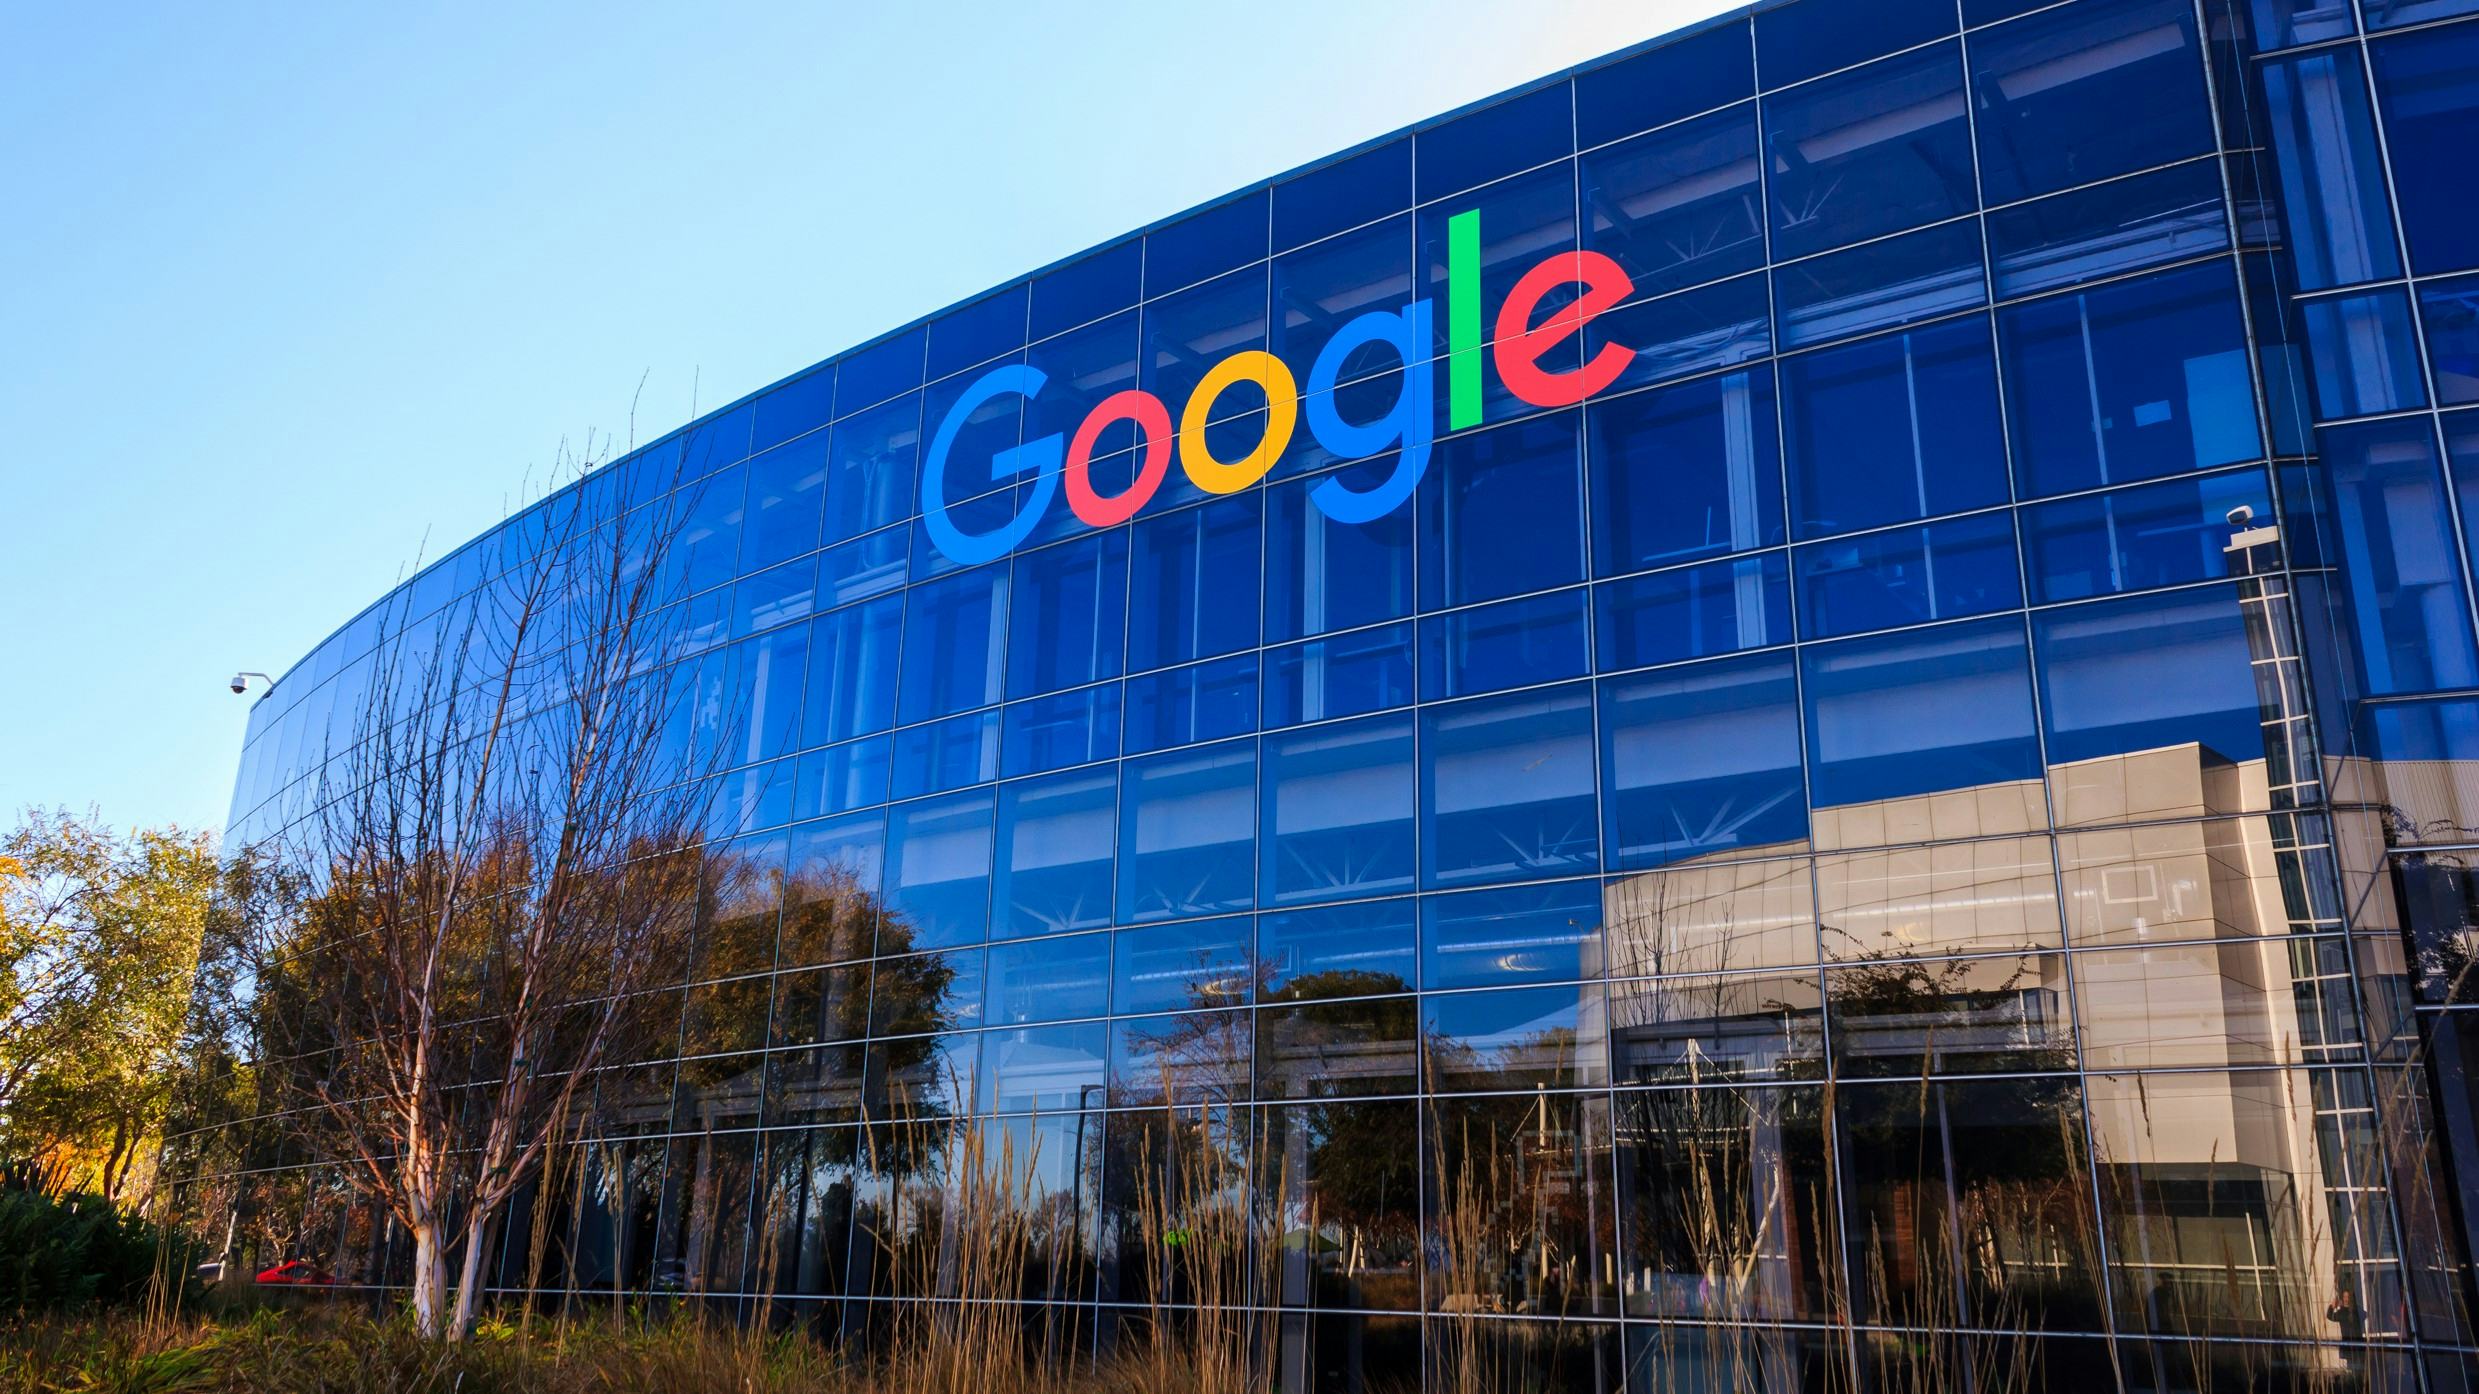 Impact AI op kantorenmarkt: Google koopt voor 2 miljard dollar huurcontracten af